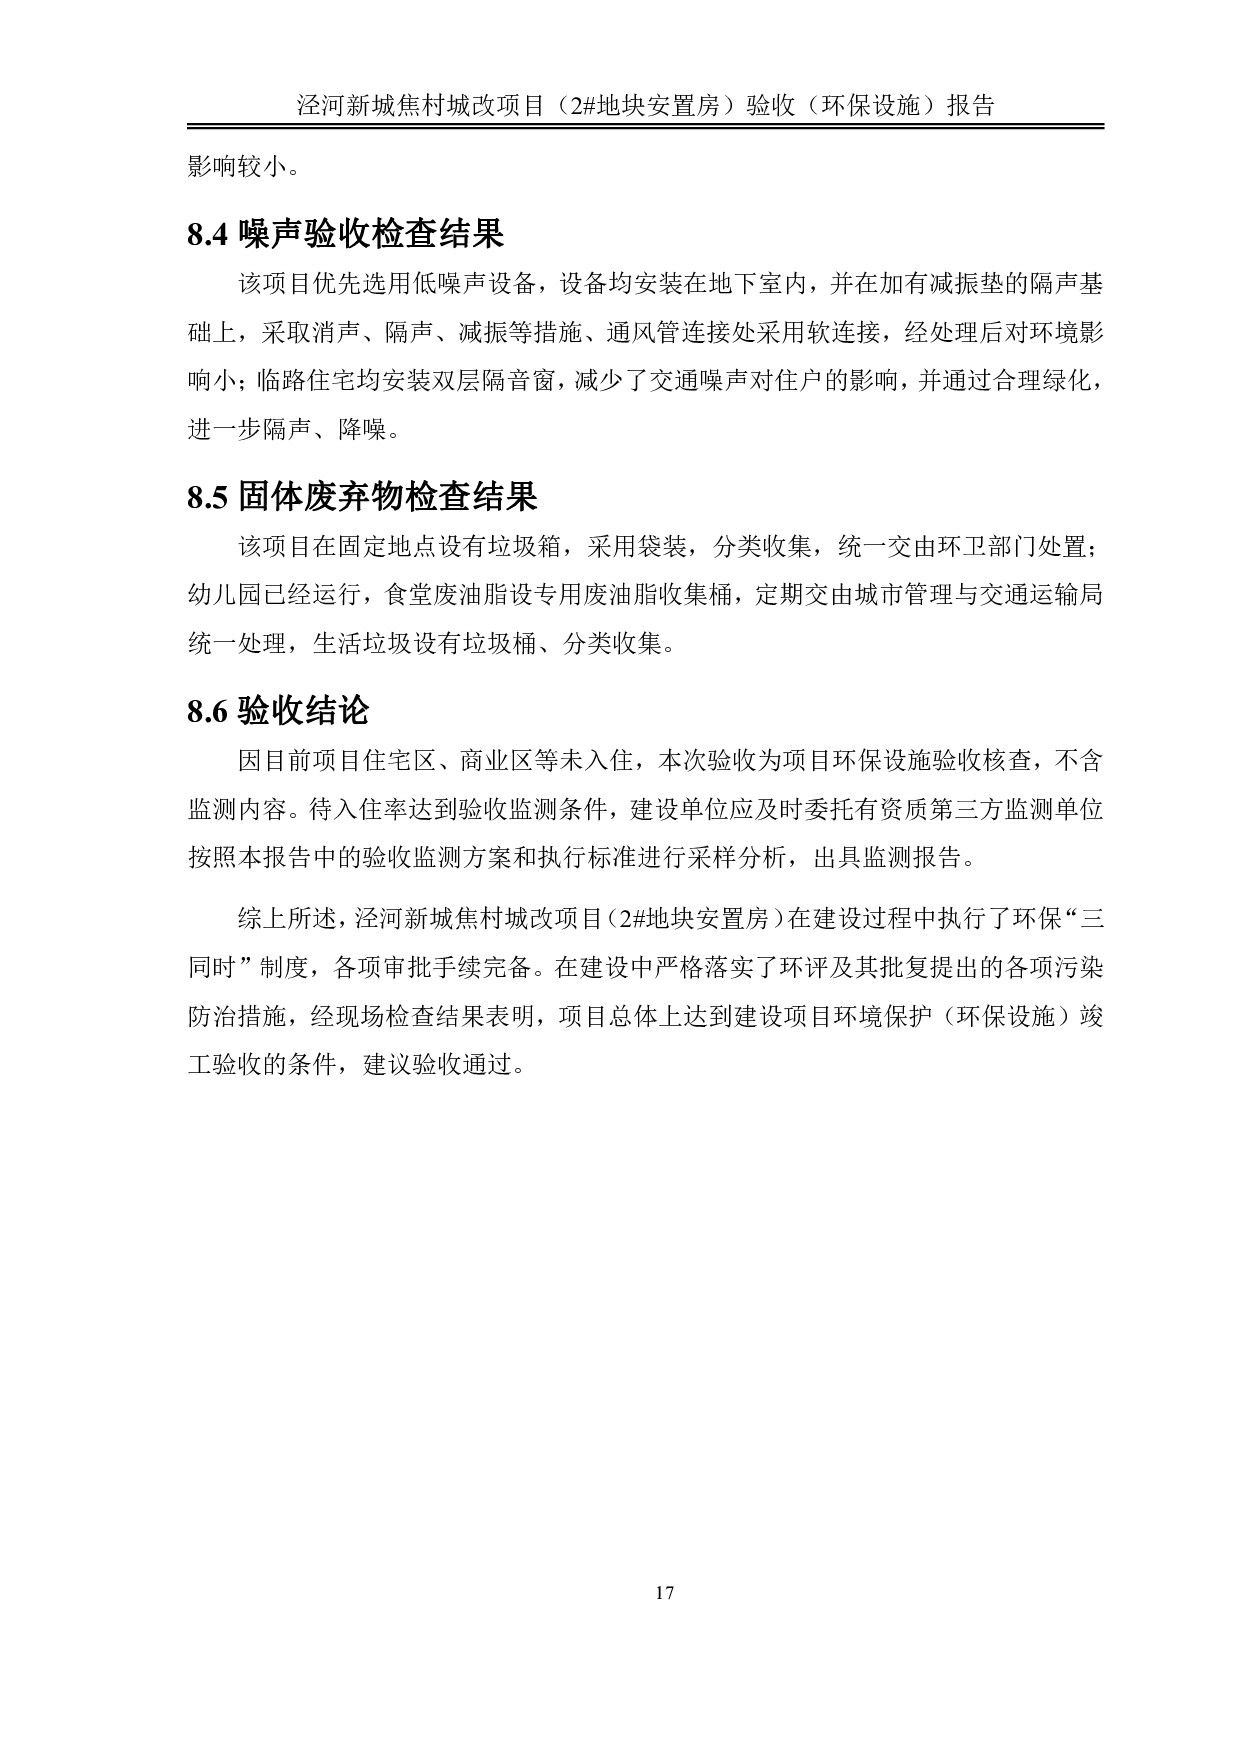 泾河新城焦村城改项目（2#地块安置房）竣工验收监测报告书及意见(2)_022.jpg